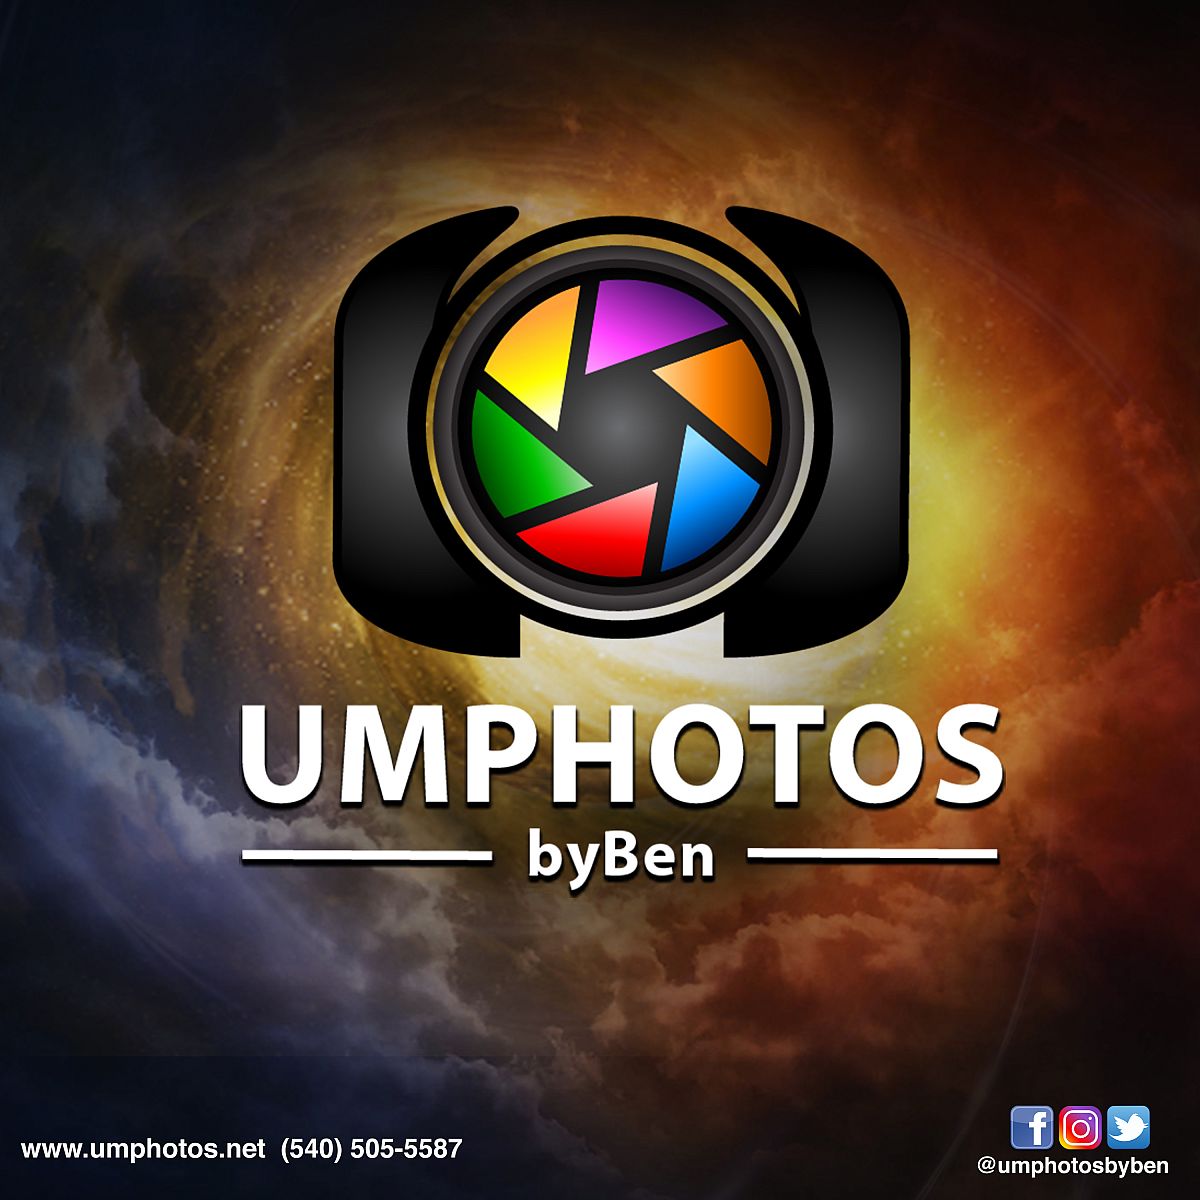 www.umphotos.net